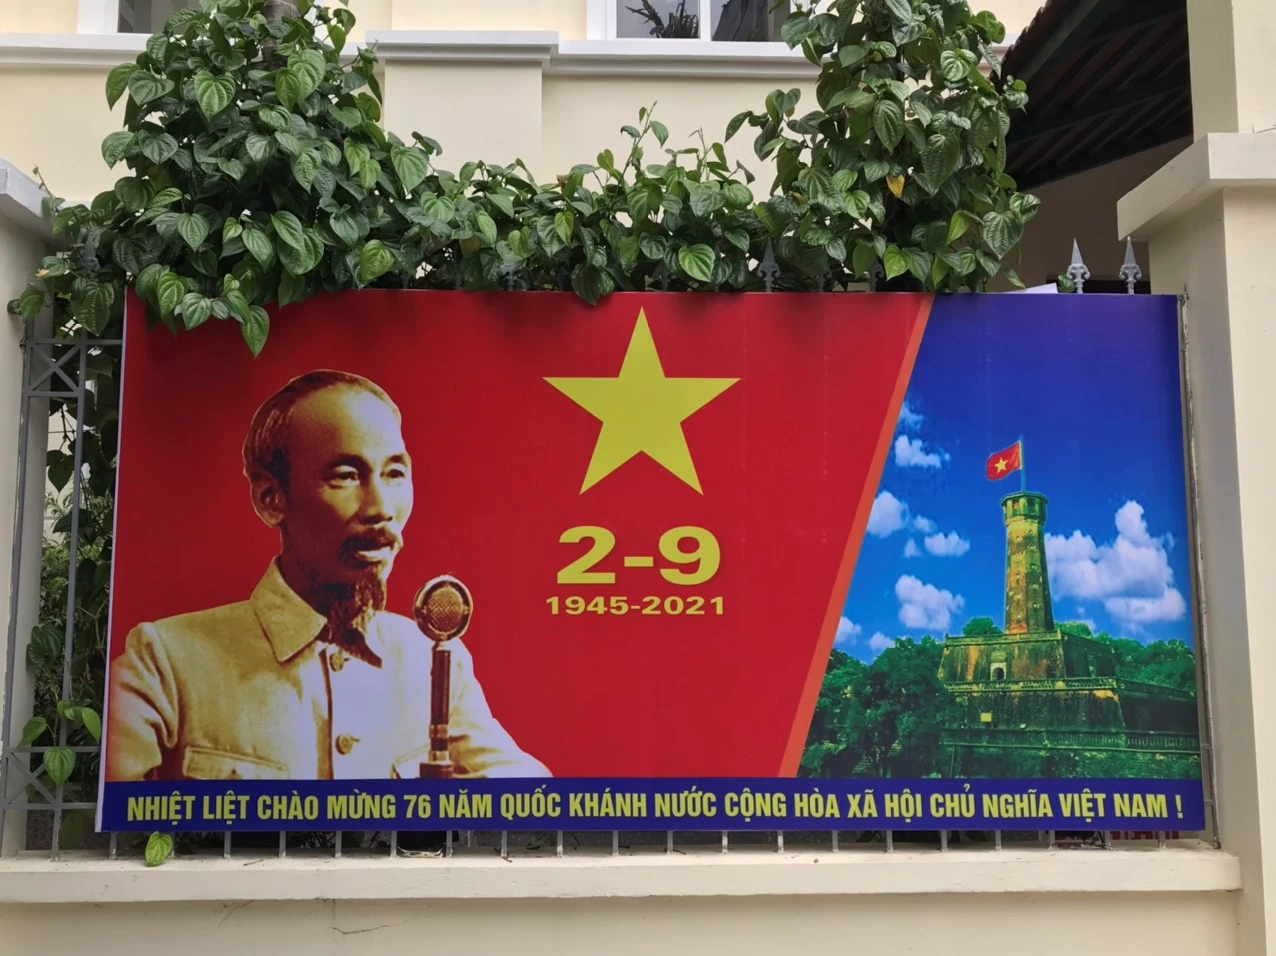 Tấm pano chào mừng 76 năm Quốc khánh nước Cộng hòa xã hội chủ nghĩa Việt Nam đặt tại phường Bách Khoa.